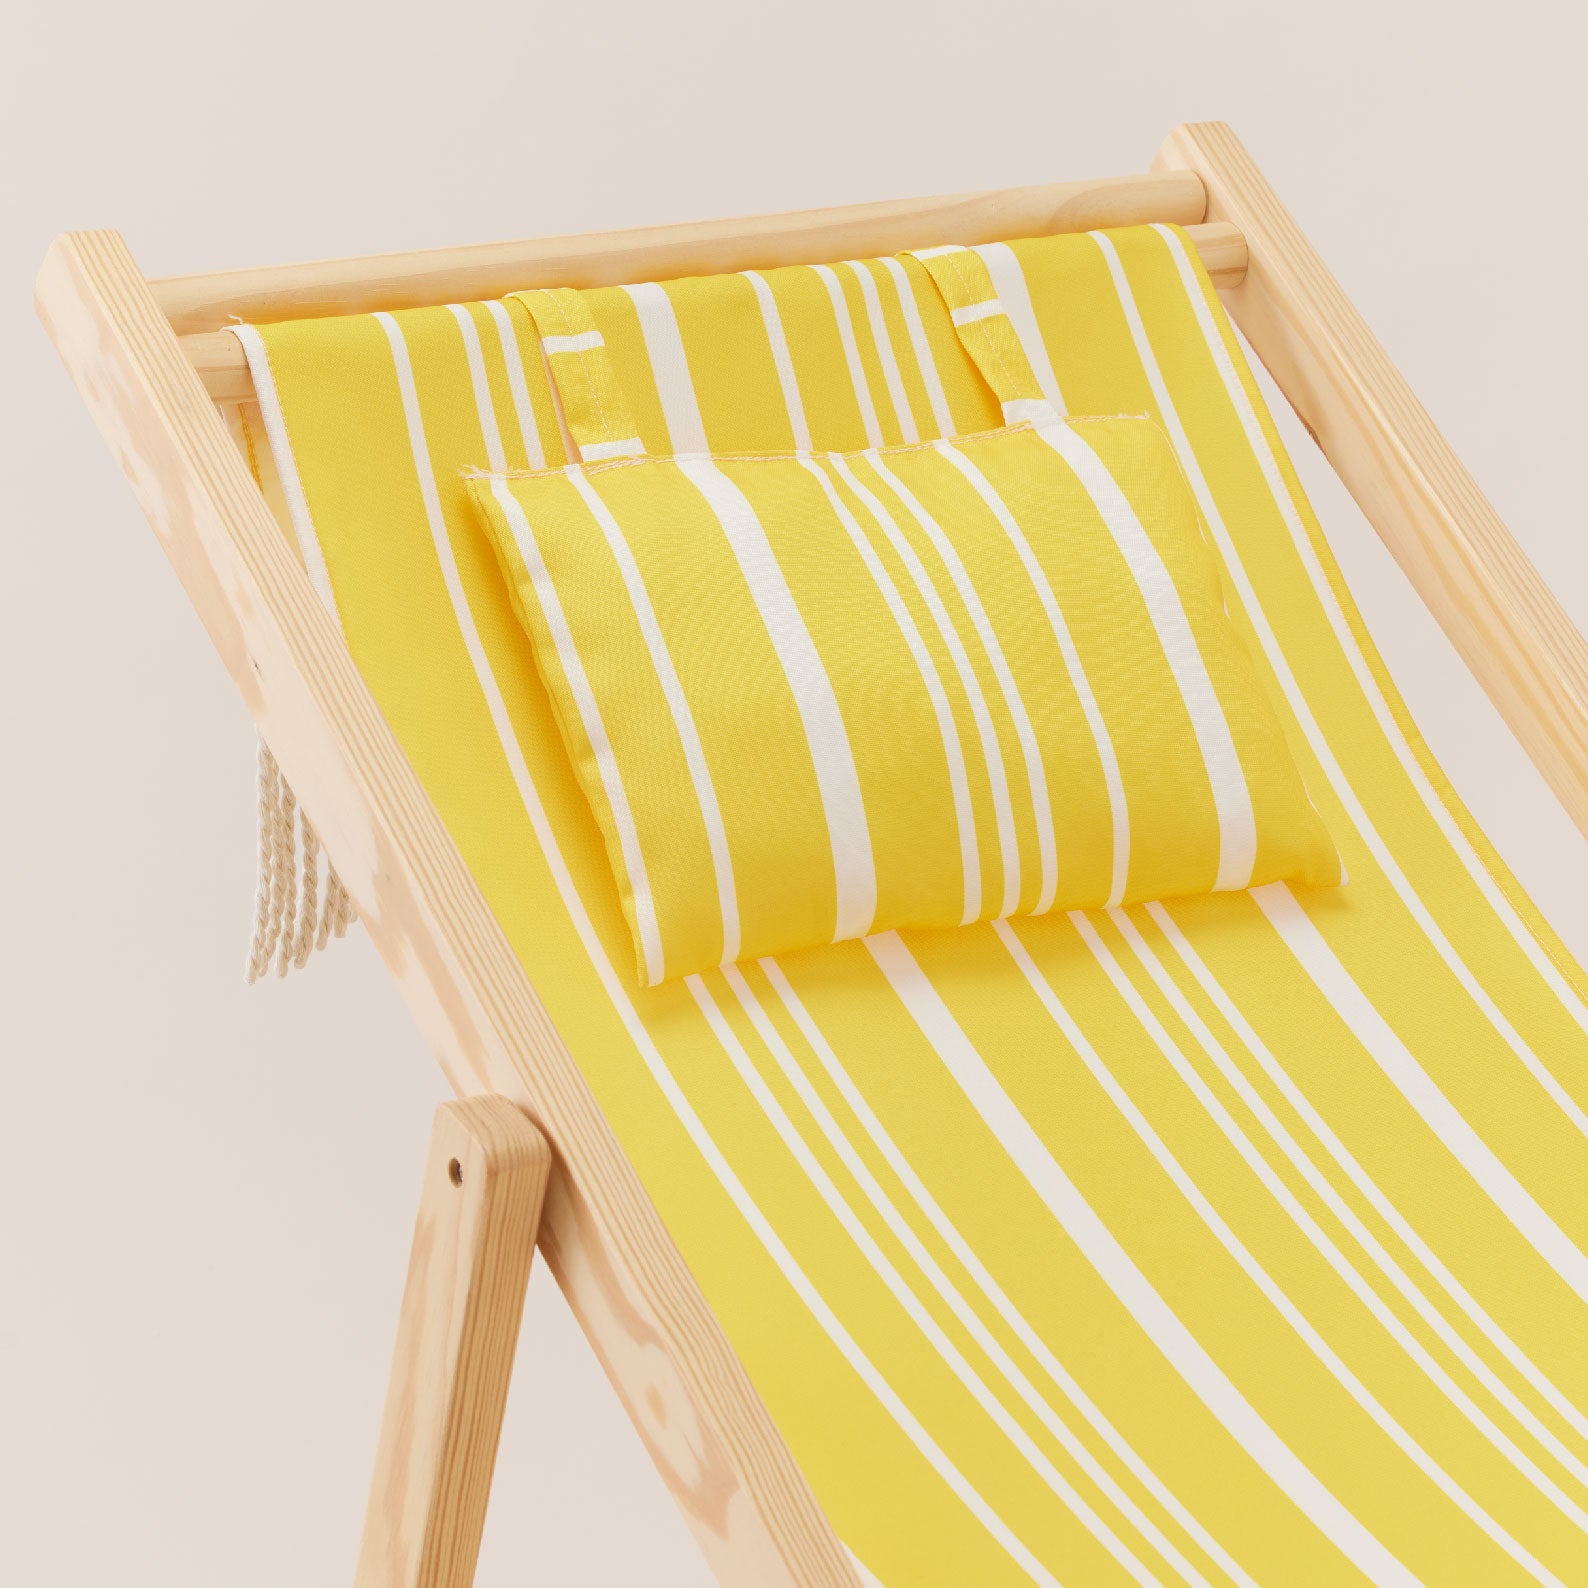 Wooden Beach Chair | เก้าอี้ชายหาด